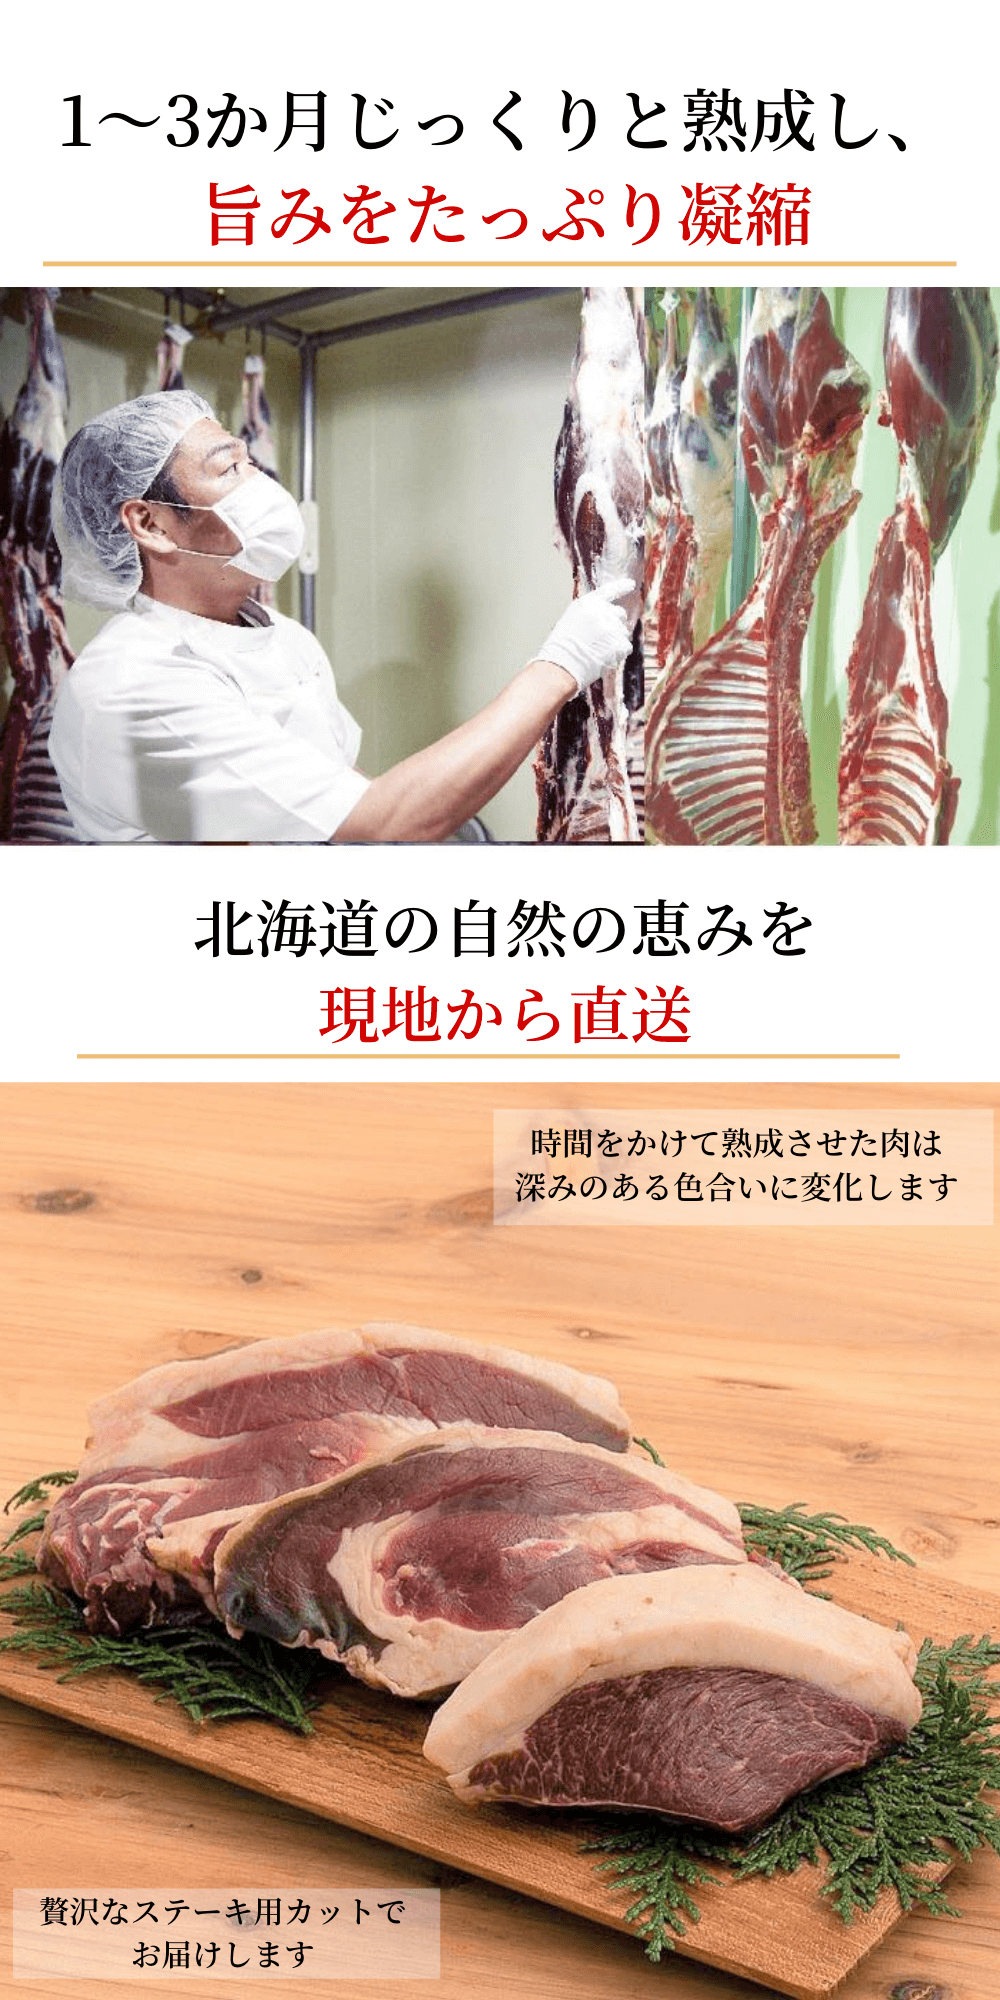 熟成ランイチ肉『北見エゾシカ』 - 北海道本格熟成エゾシカ肉専門店｜poro wacca（ポロワッカ）